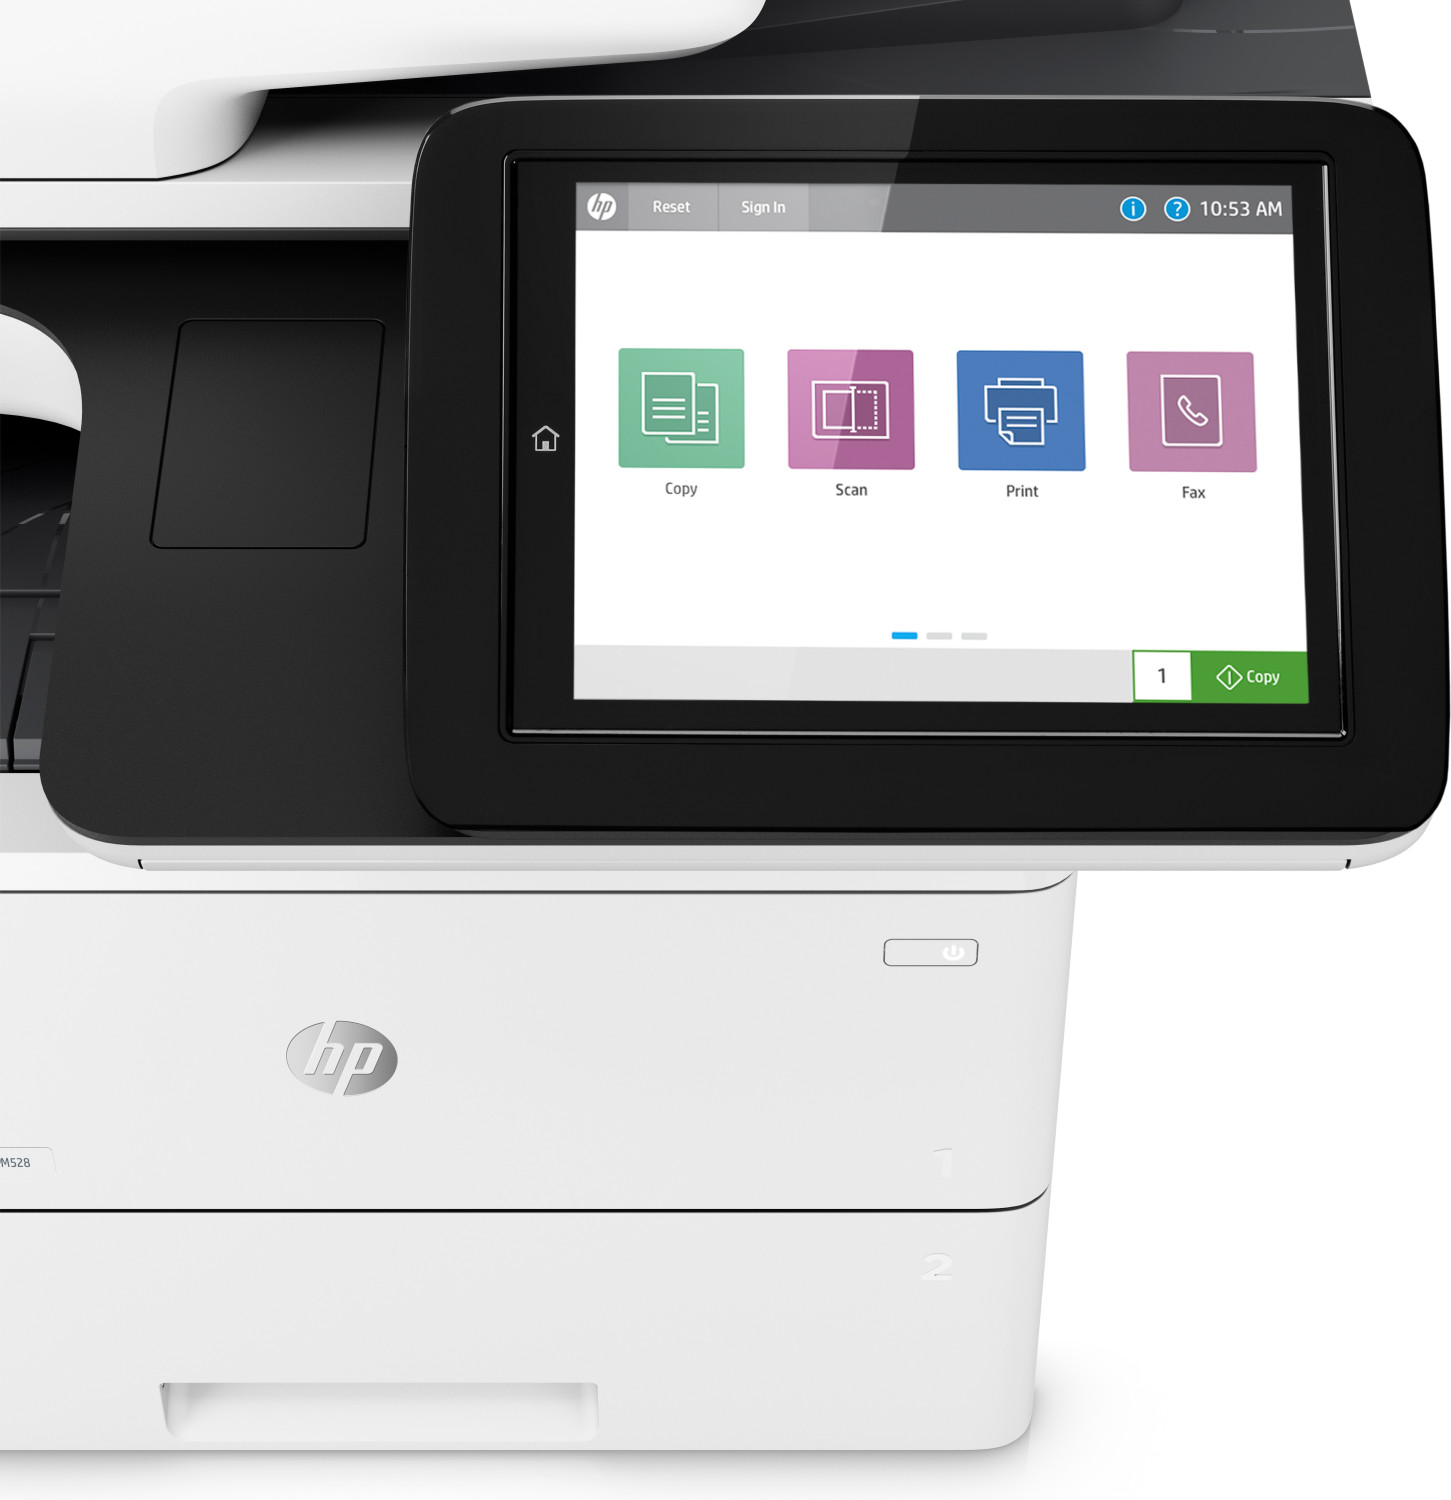 Image of HP LaserJet Enterprise Stampante multifunzione M528dn, Bianco e nero, Stampante per Stampa, copia, scansione e fax opzionale, Stampa da porta USB frontale; scansione verso e-mail; stampa fronte/retro; scansione fronte/retro